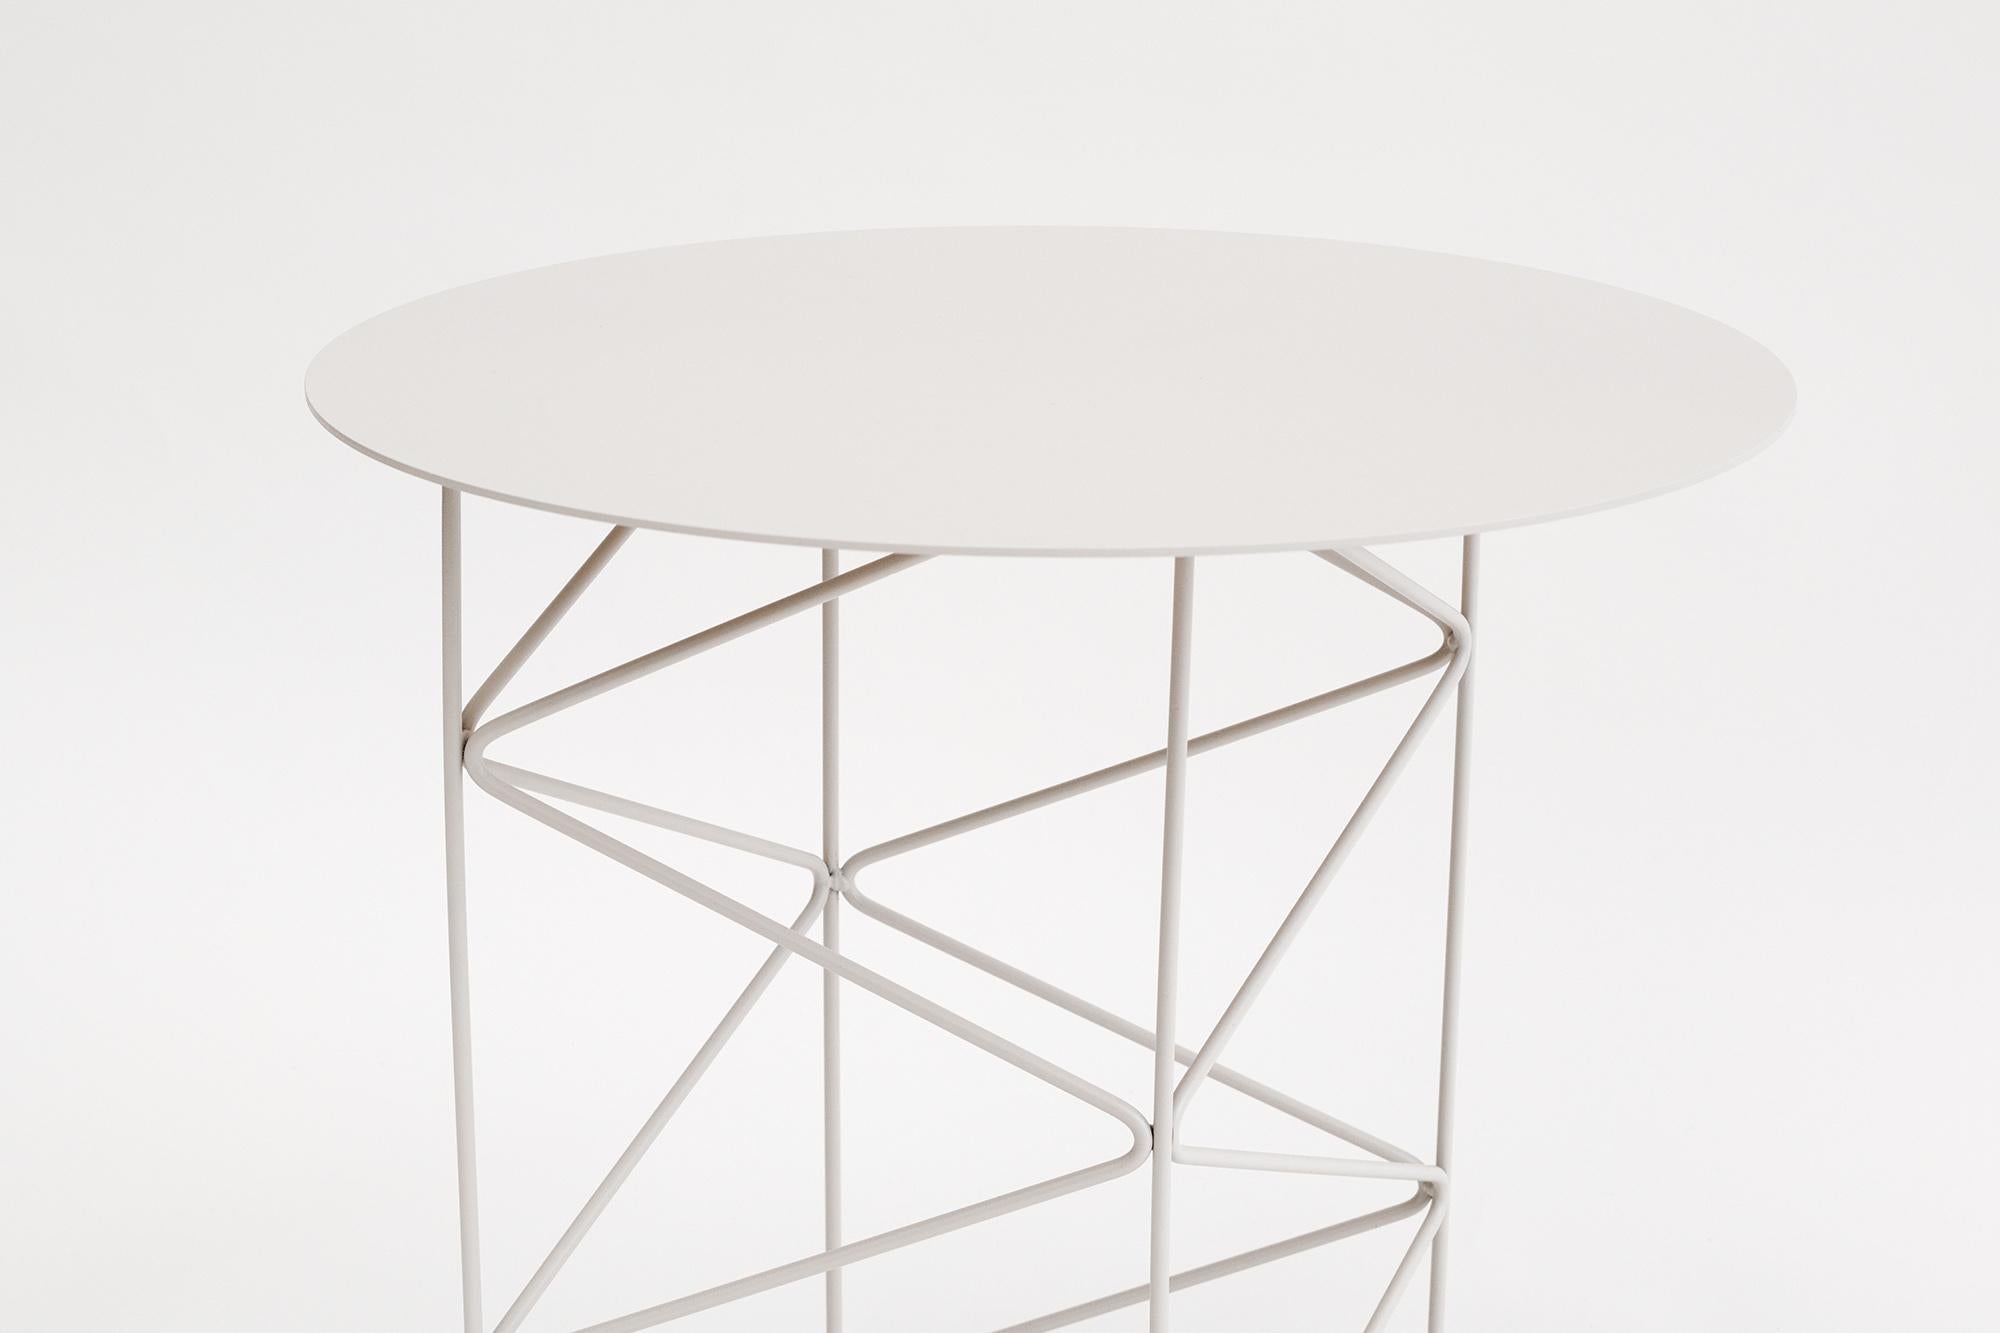 Inspirée par le mouvement architectural high-tech, la table d'appoint INOS célèbre la valeur esthétique de sa structure métallique. Les lignes pures du cadre en acier soudé créent une géométrie changeante de lumière et d'ombre au fur et à mesure que